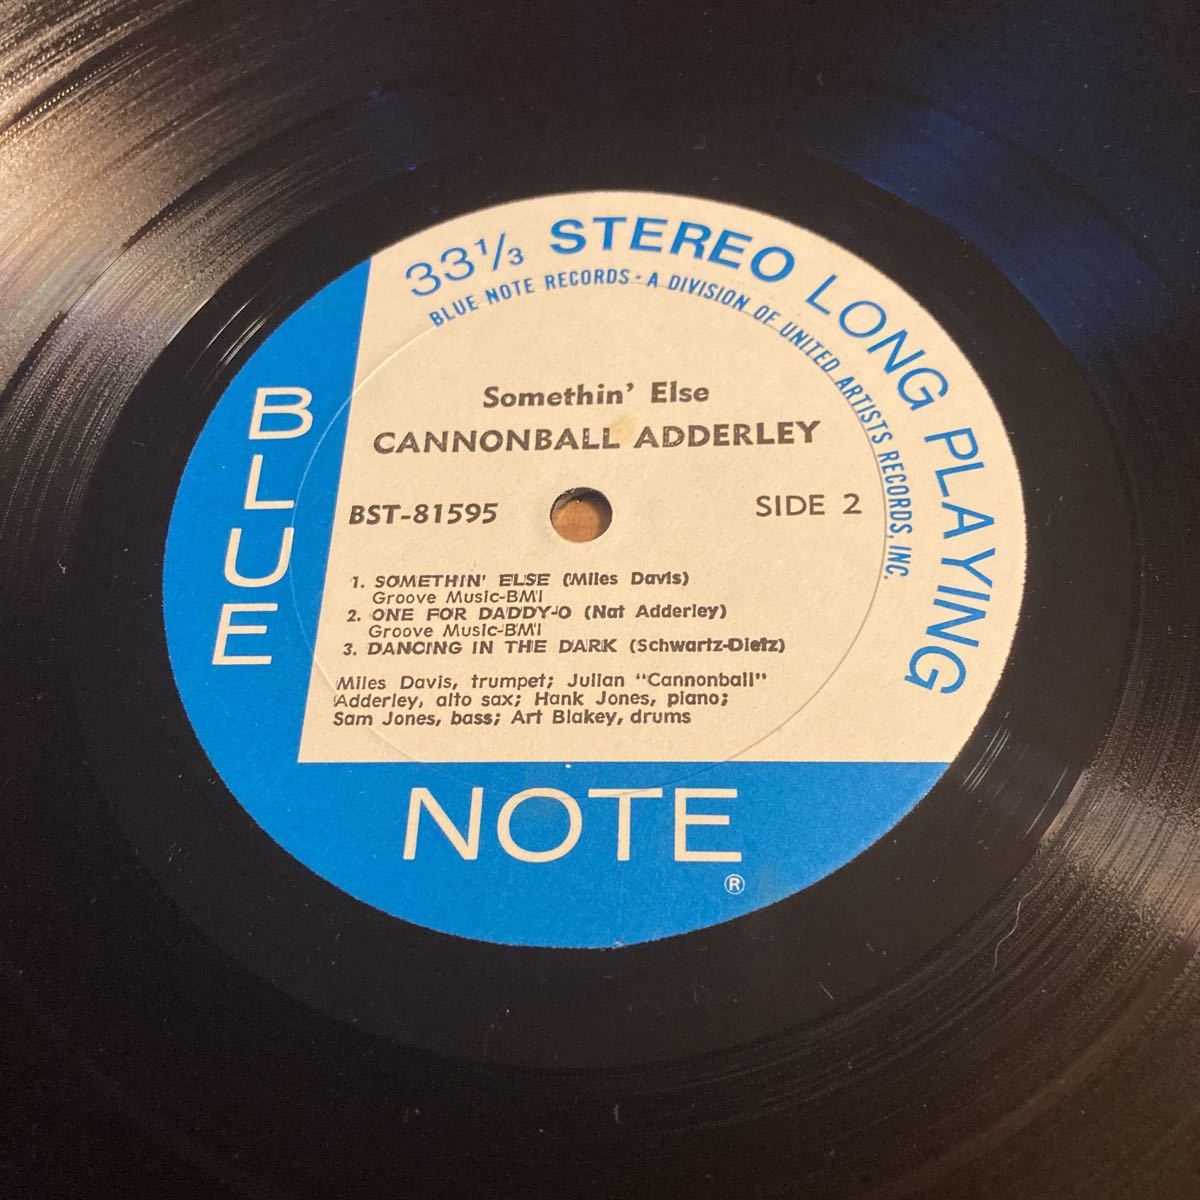 【名盤】Cannonball Adderley キャノンボール・アダレイ サムシン・エルス BLUENOTE records liberty records miles davis bst-81595_画像10